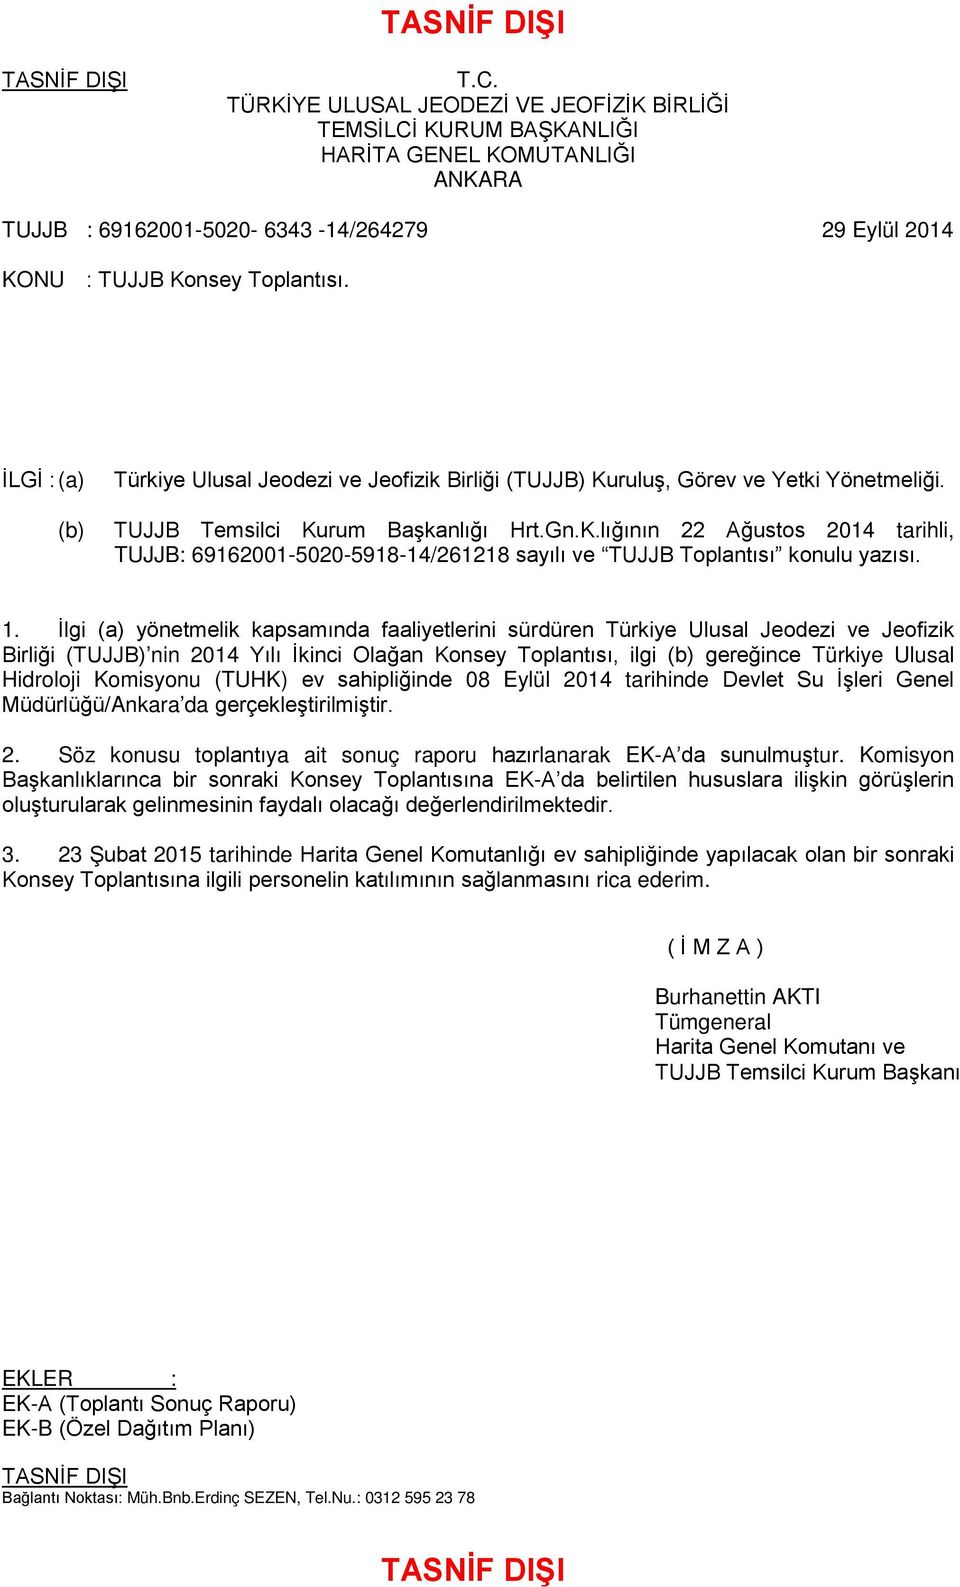 1. İlgi (a) yönetmelik kapsamında faaliyetlerini sürdüren Türkiye Ulusal Jeodezi ve Jeofizik Birliği (TUJJB) nin 2014 Yılı İkinci Olağan Konsey Toplantısı, ilgi (b) gereğince Türkiye Ulusal Hidroloji